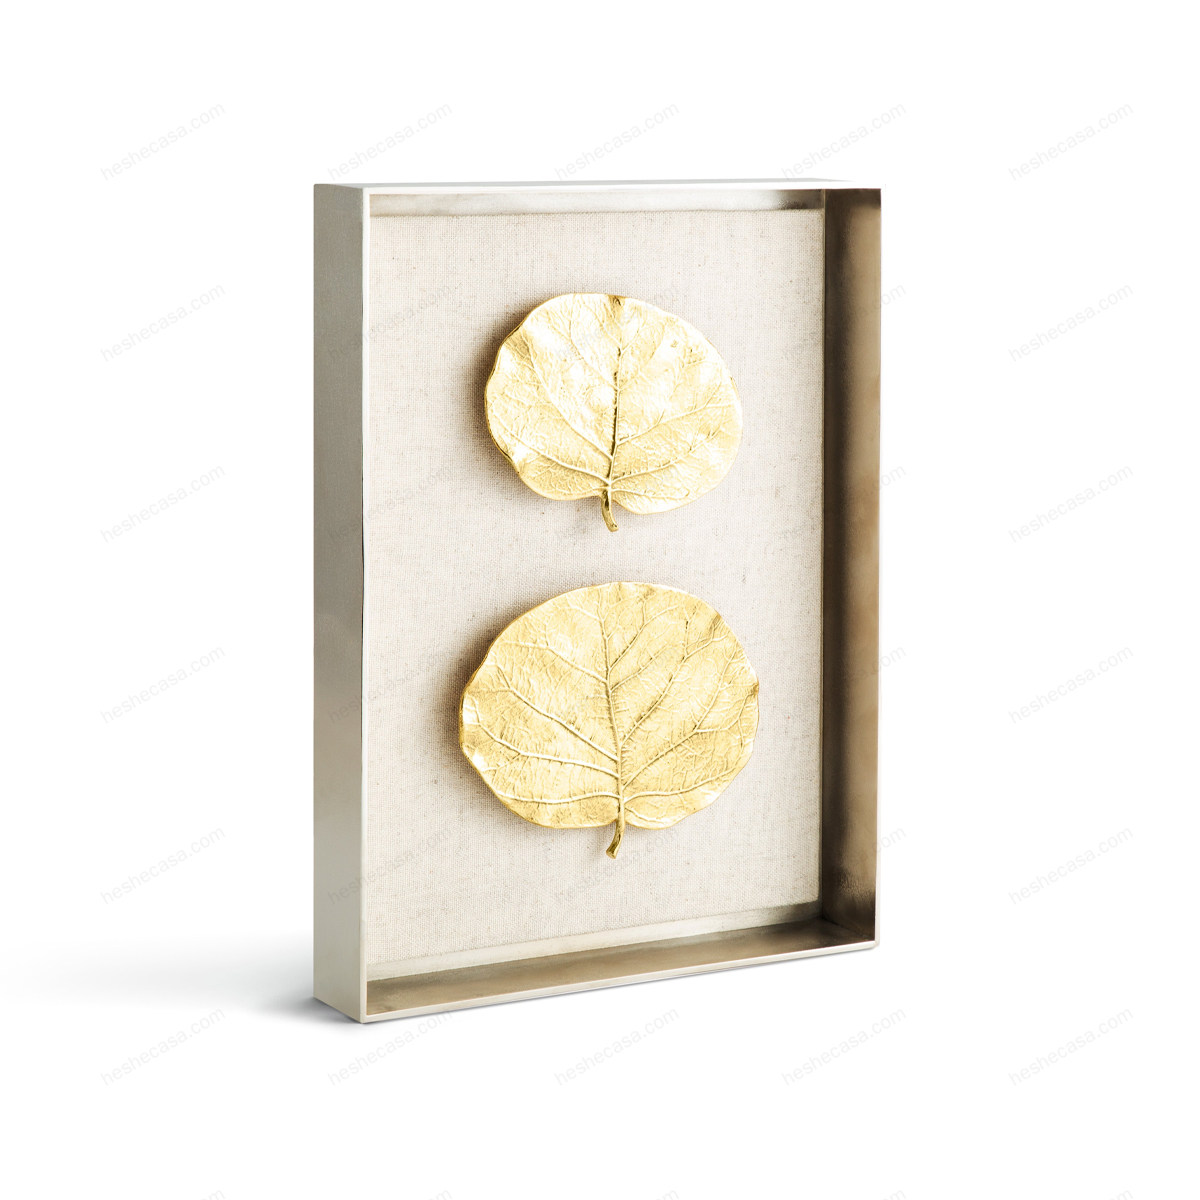 Botanical Leaf Fabric Shadow Box装饰画